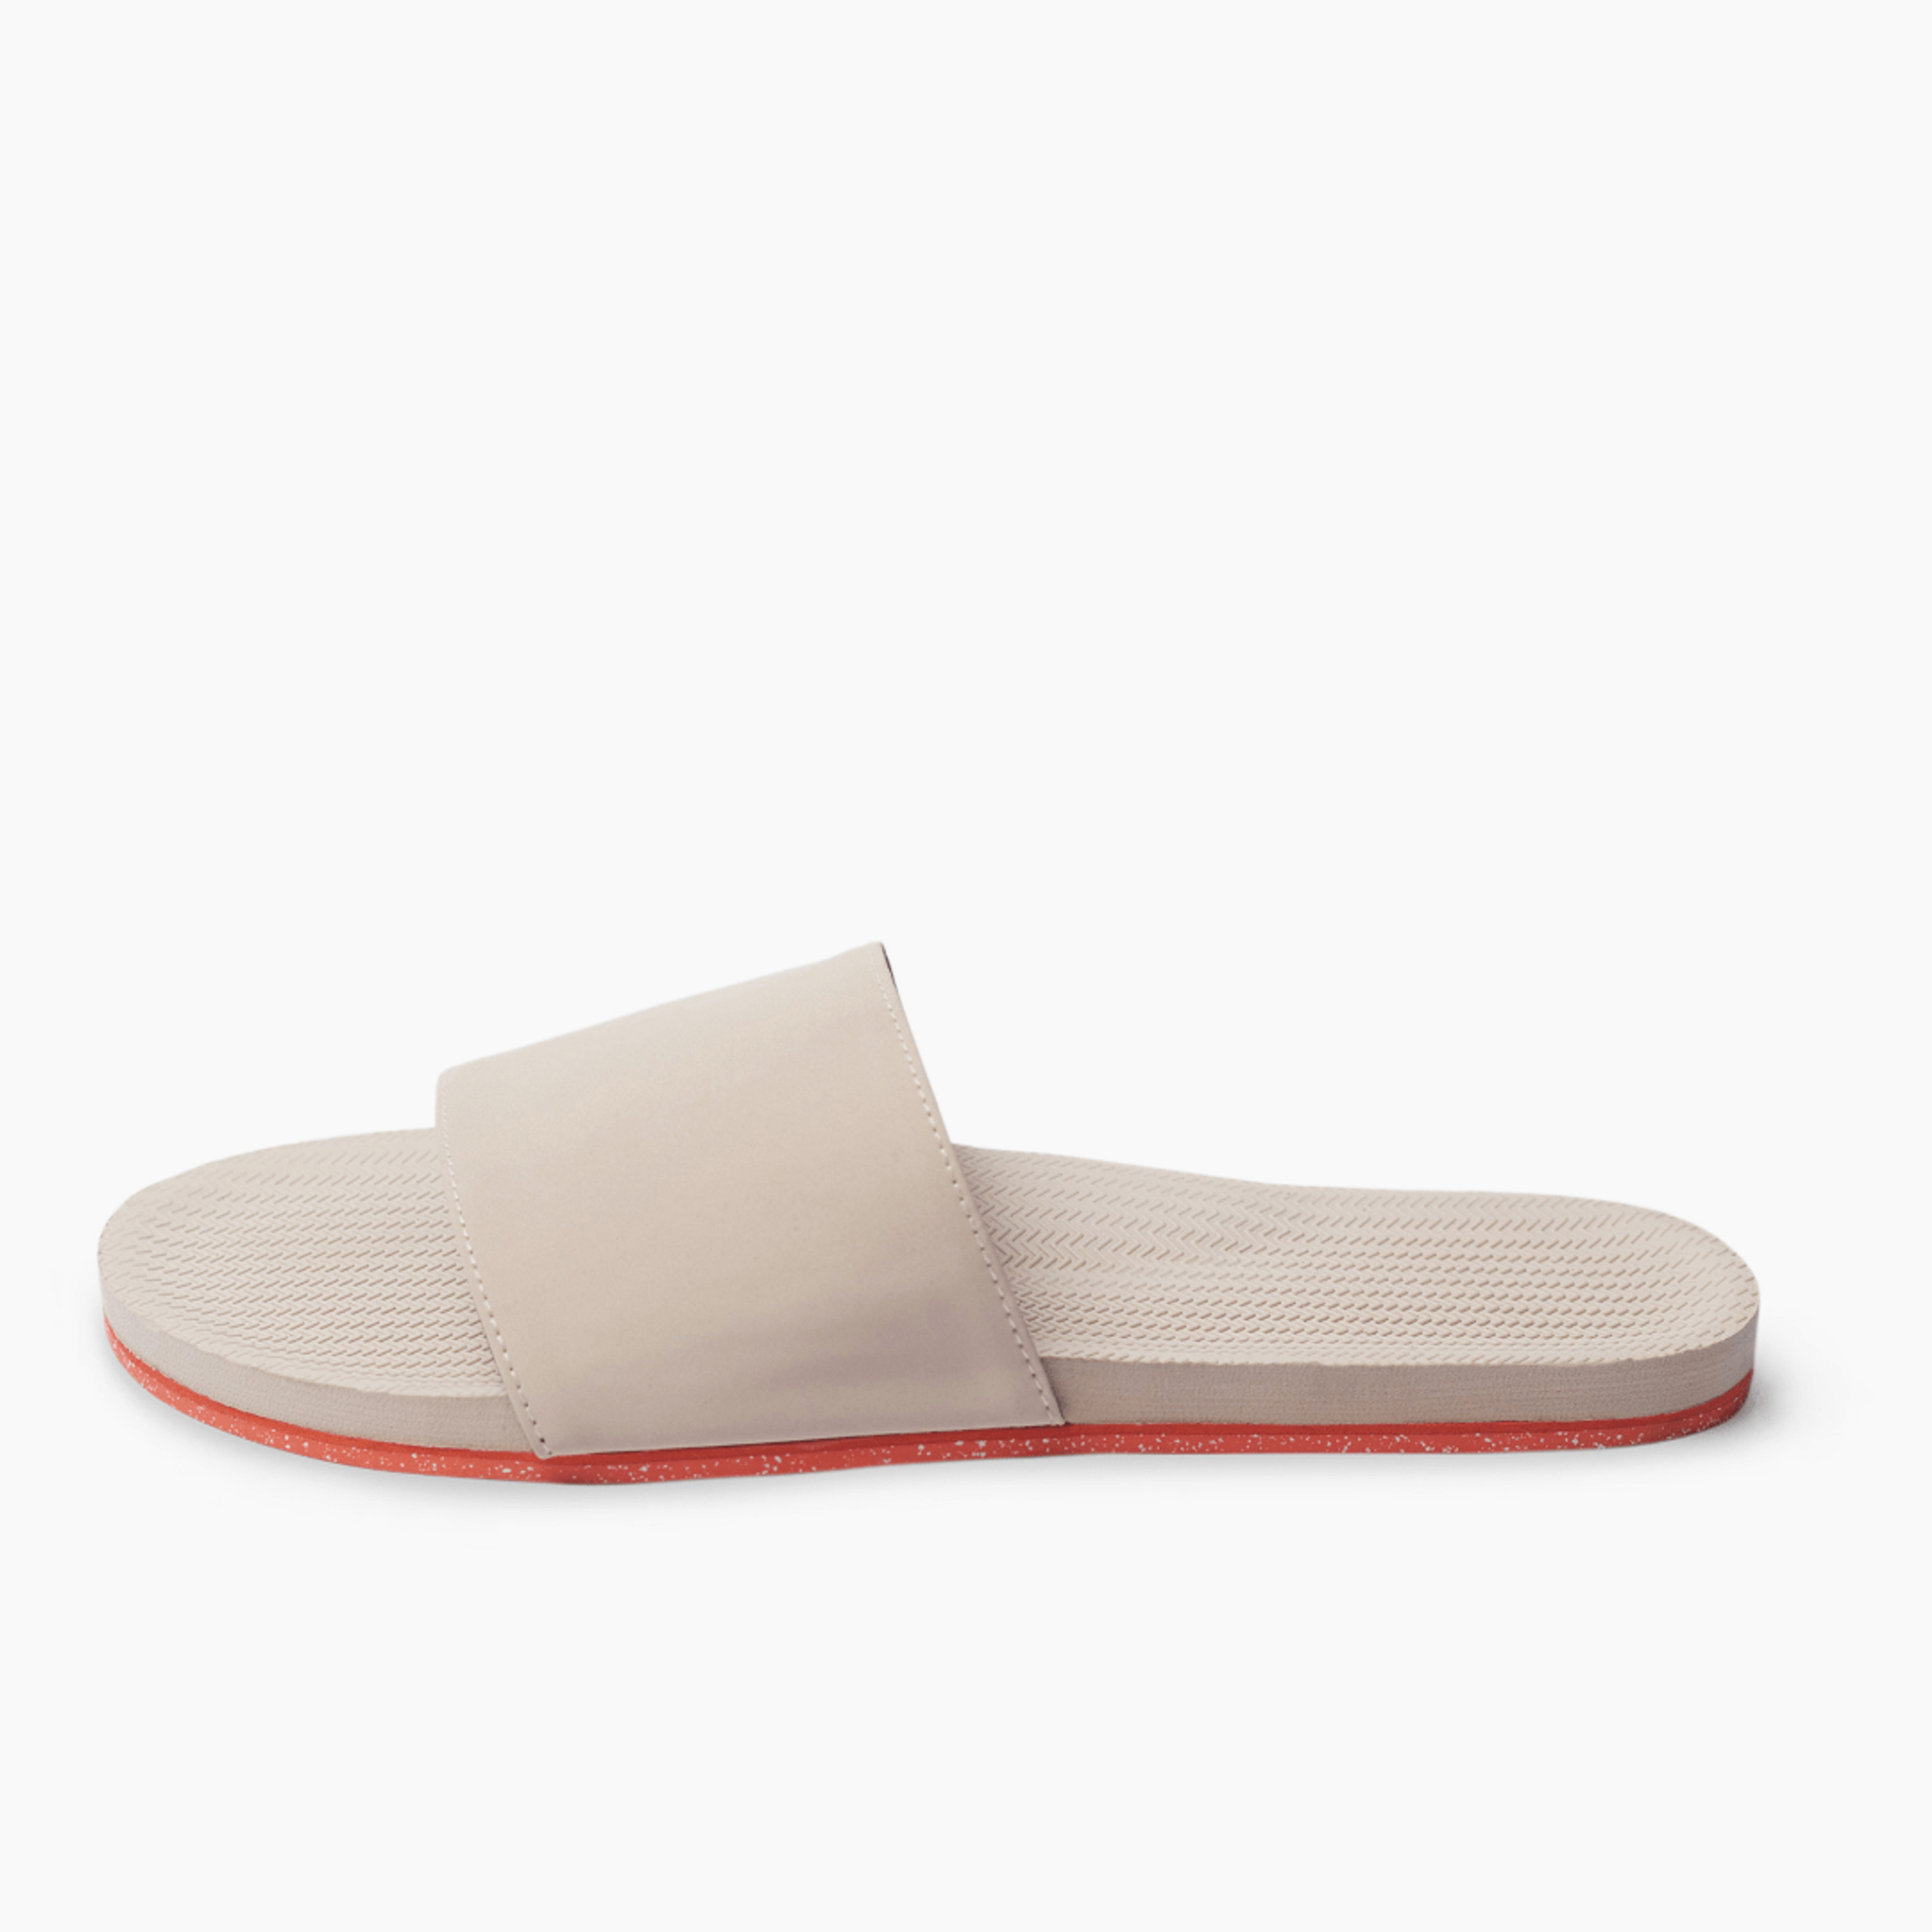 Women's Slide Sneaker Sole - Sea Salt/Orange Sole